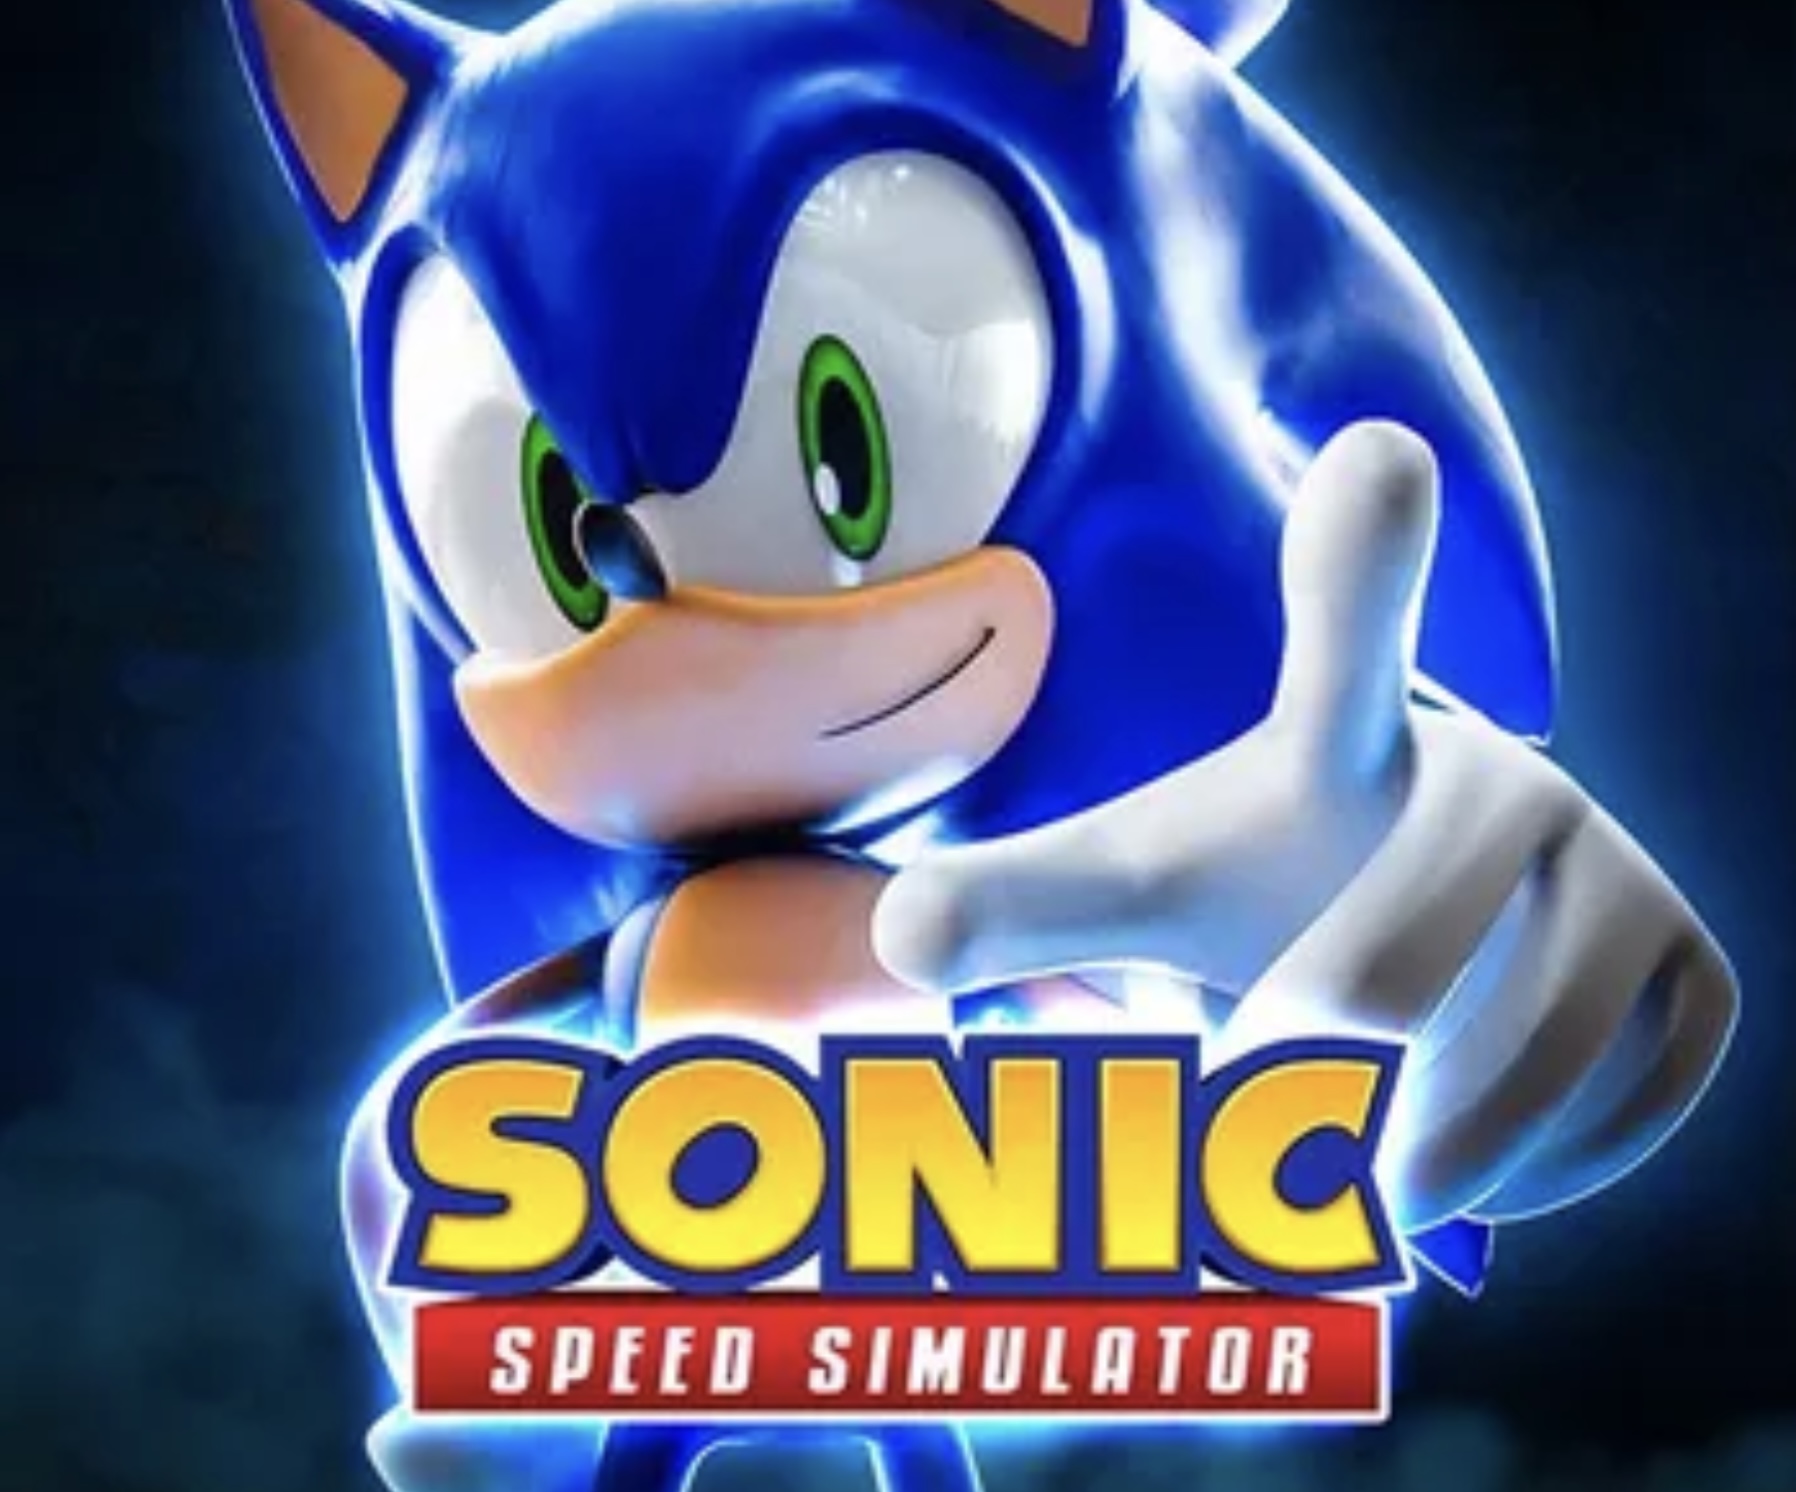 Sonic speed simulator quiz - TriviaCreator